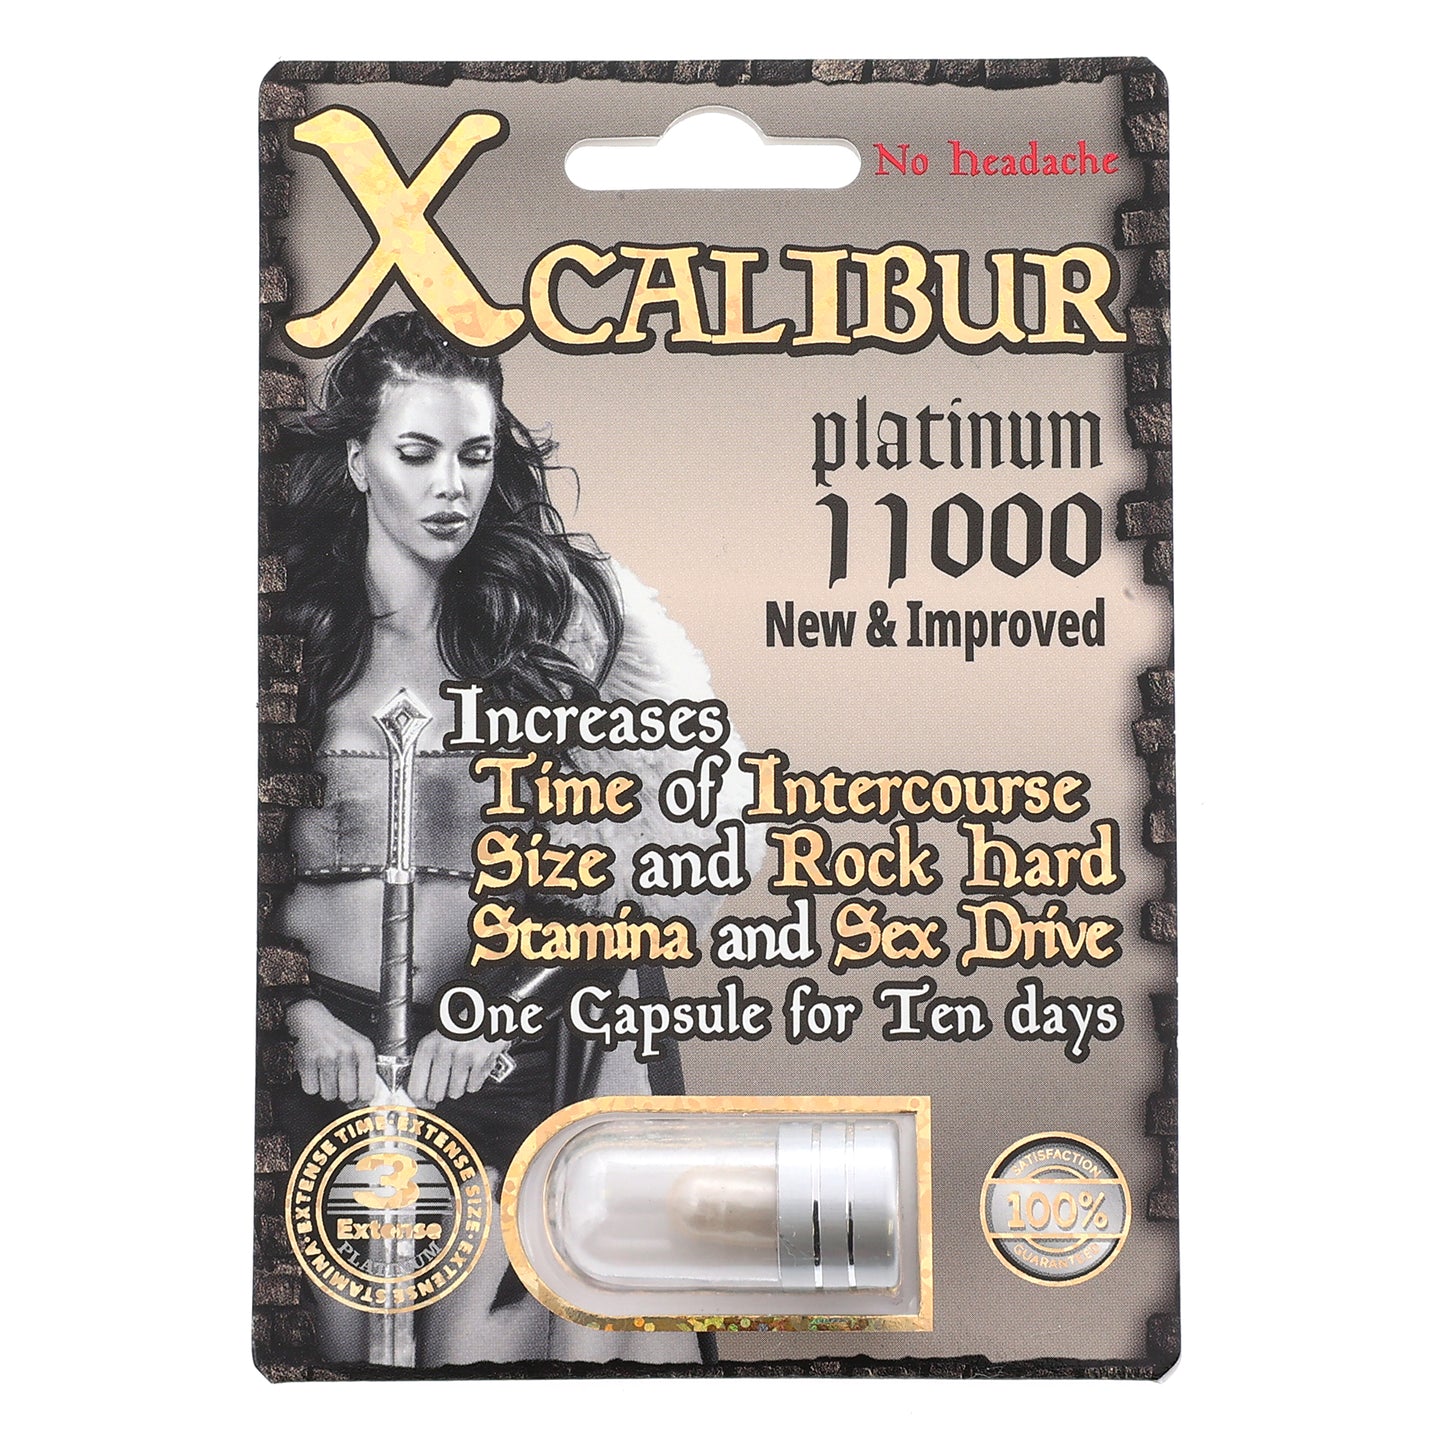 Xcalibur Platinum 11000